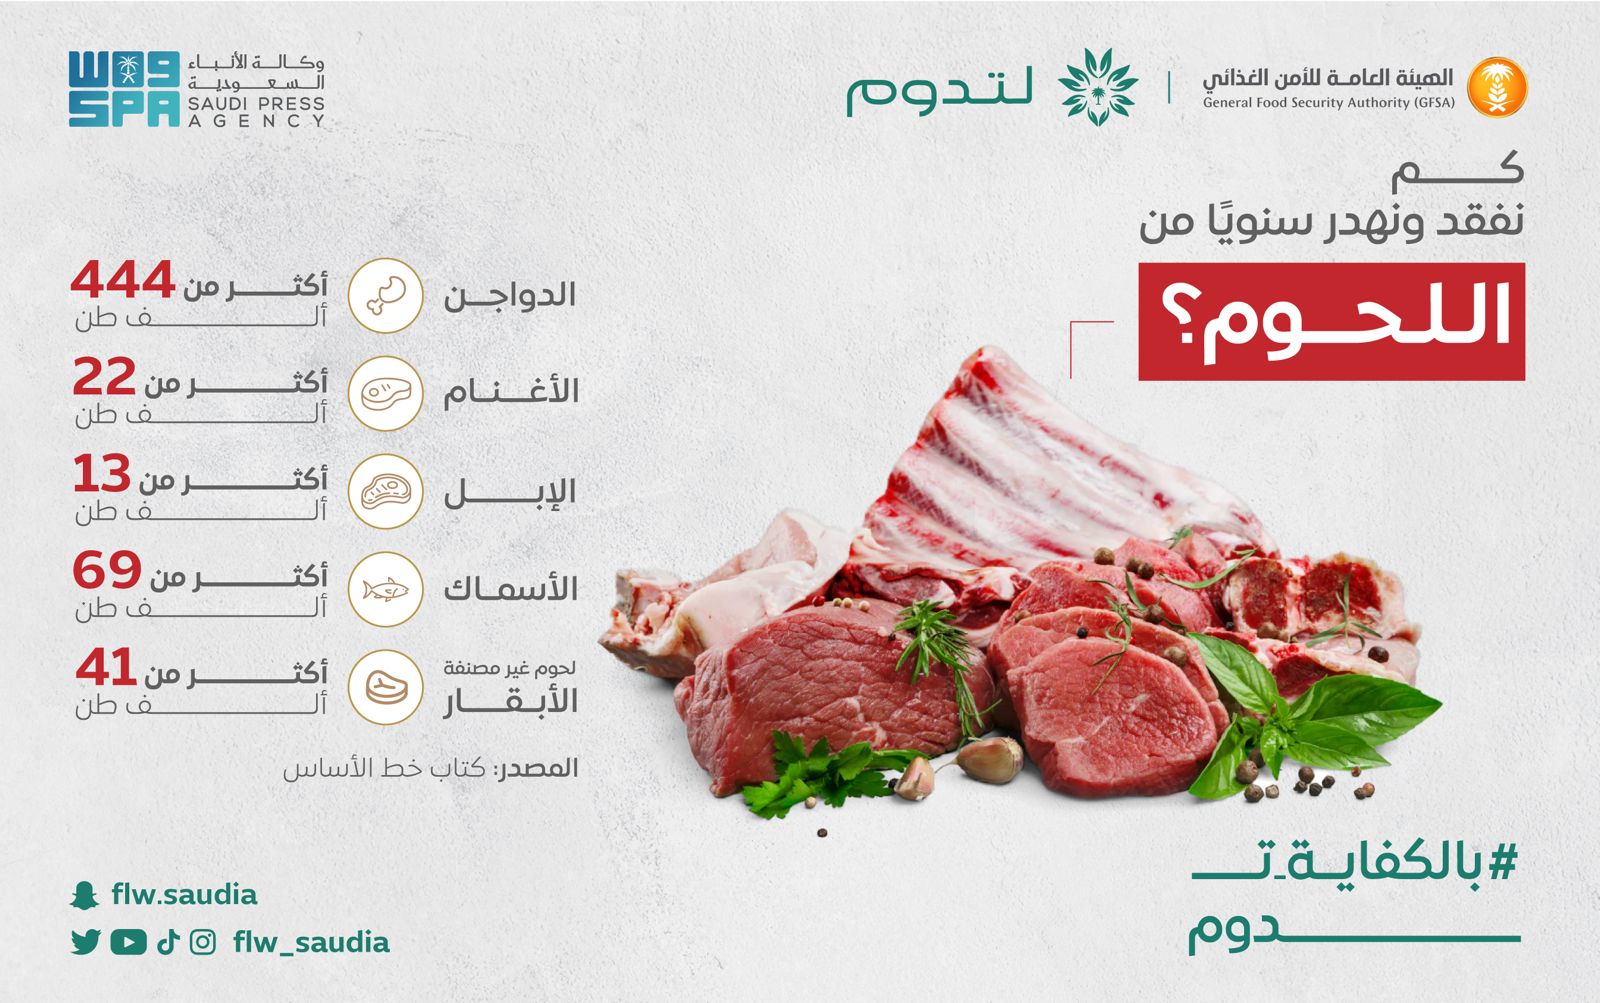 هدر الطعام (اللحوم) في المملكة العربية السعودية